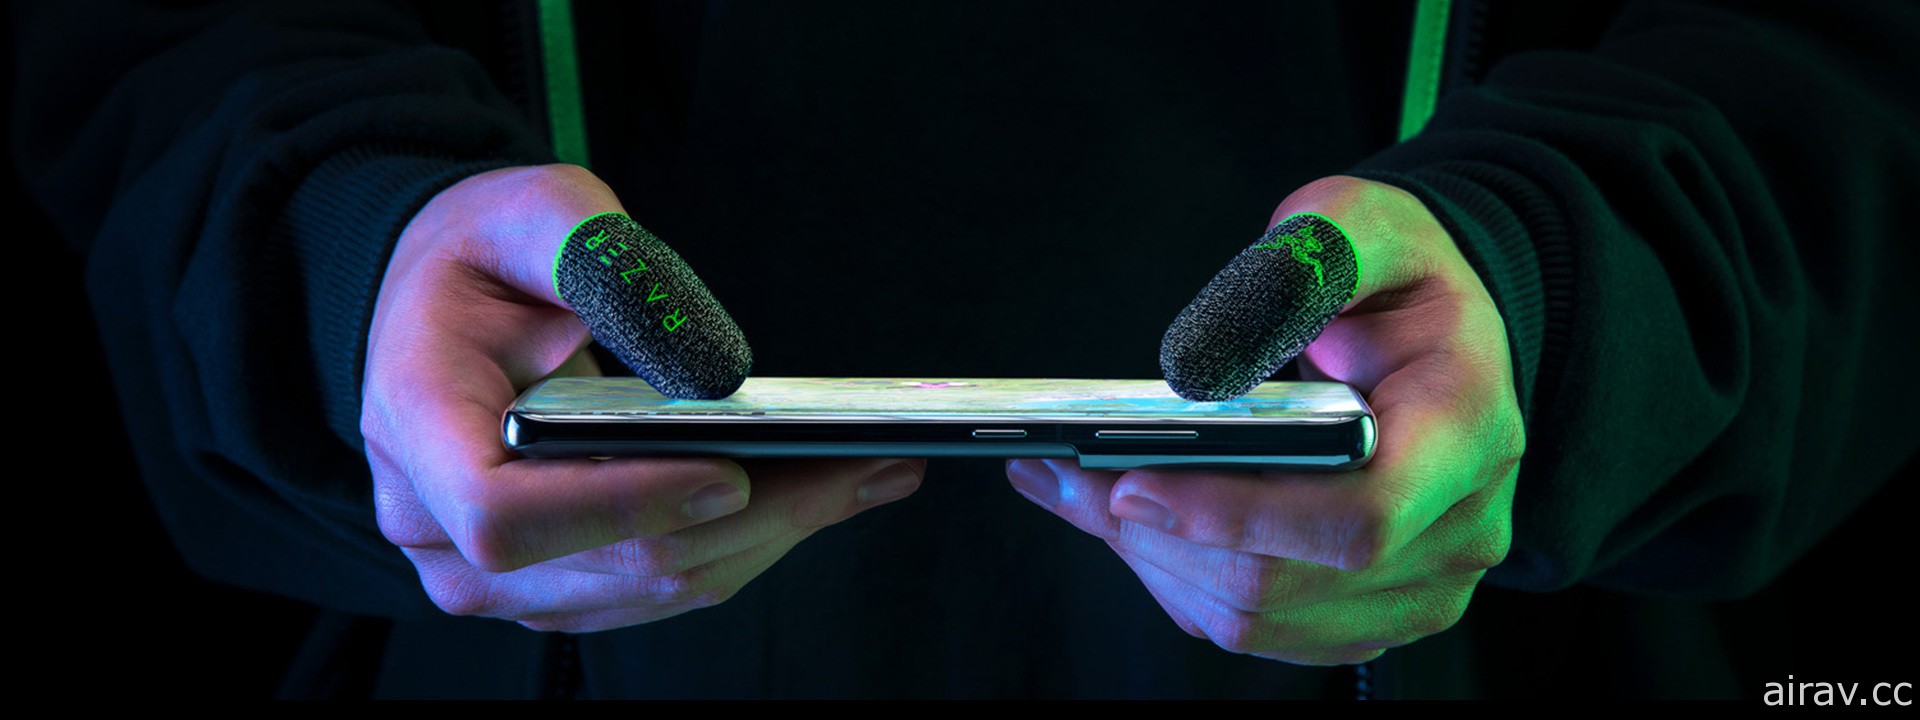 雷蛇推出手机游戏专用“电竞指套 Razer Gaming Finger Sleeve” 强调轻薄、高灵敏度